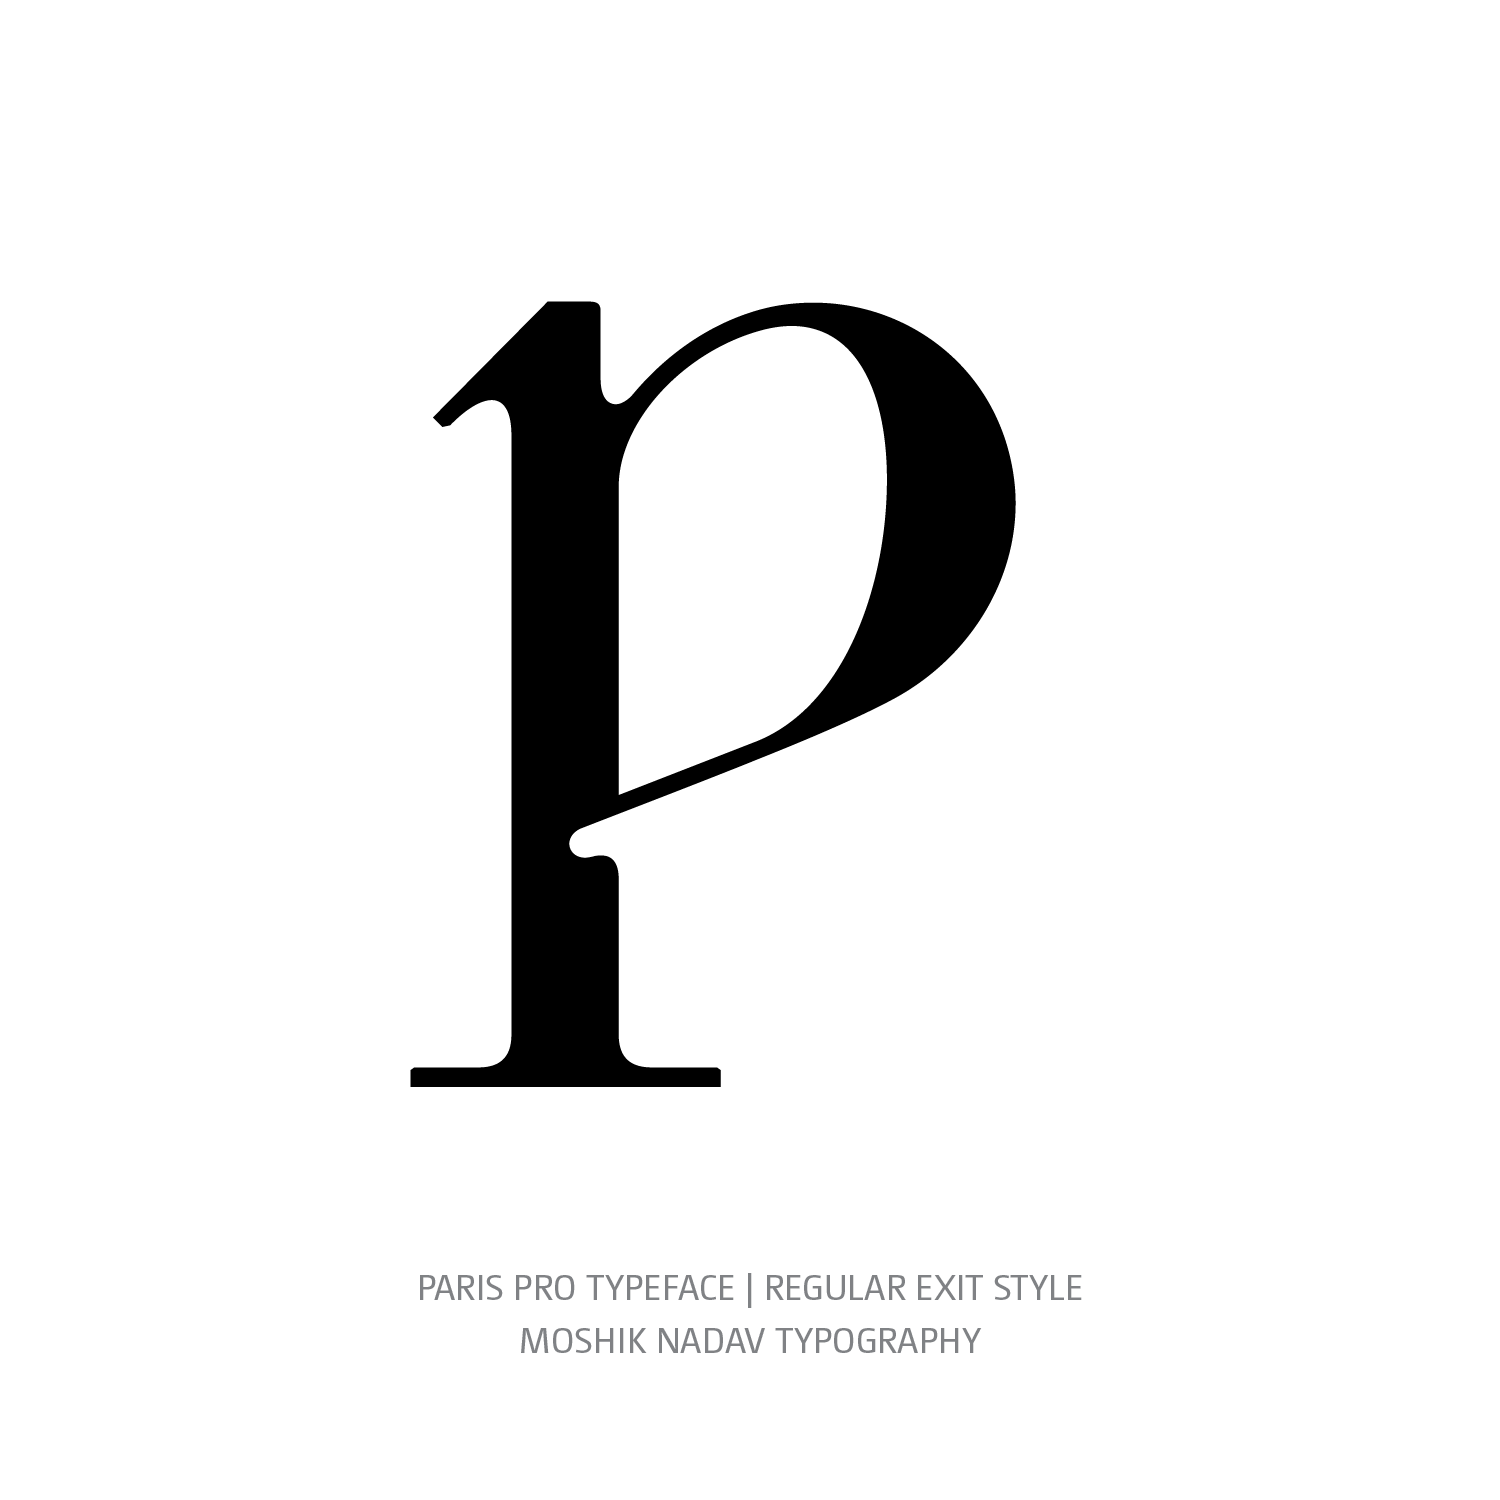 Paris Pro Typeface Regular Exit p